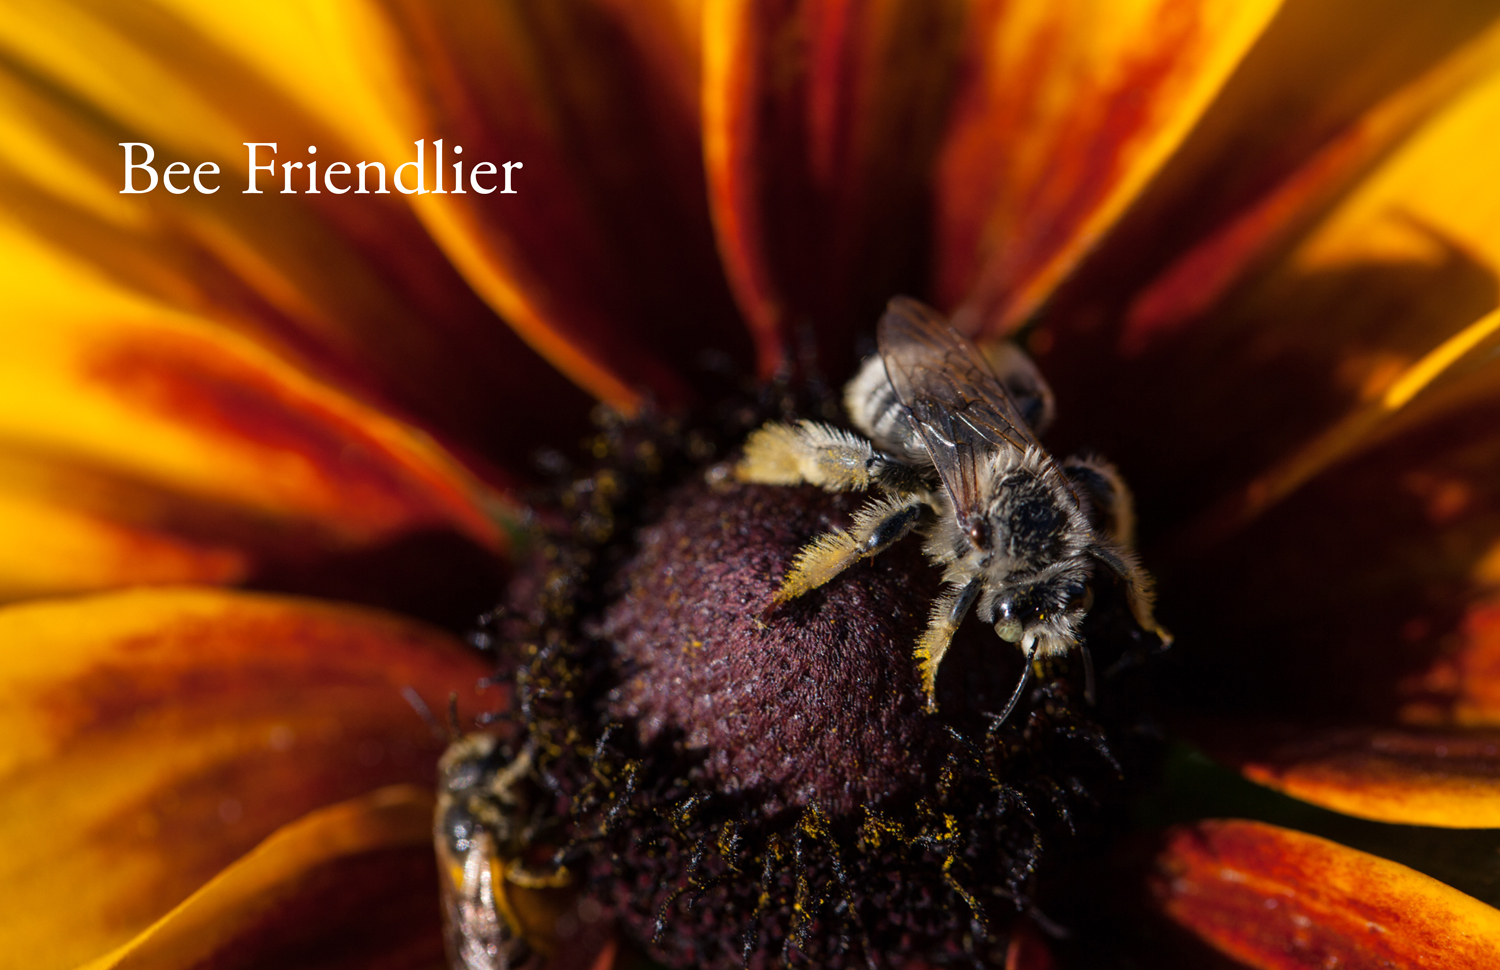 Bee_Friendlier_1.jpg